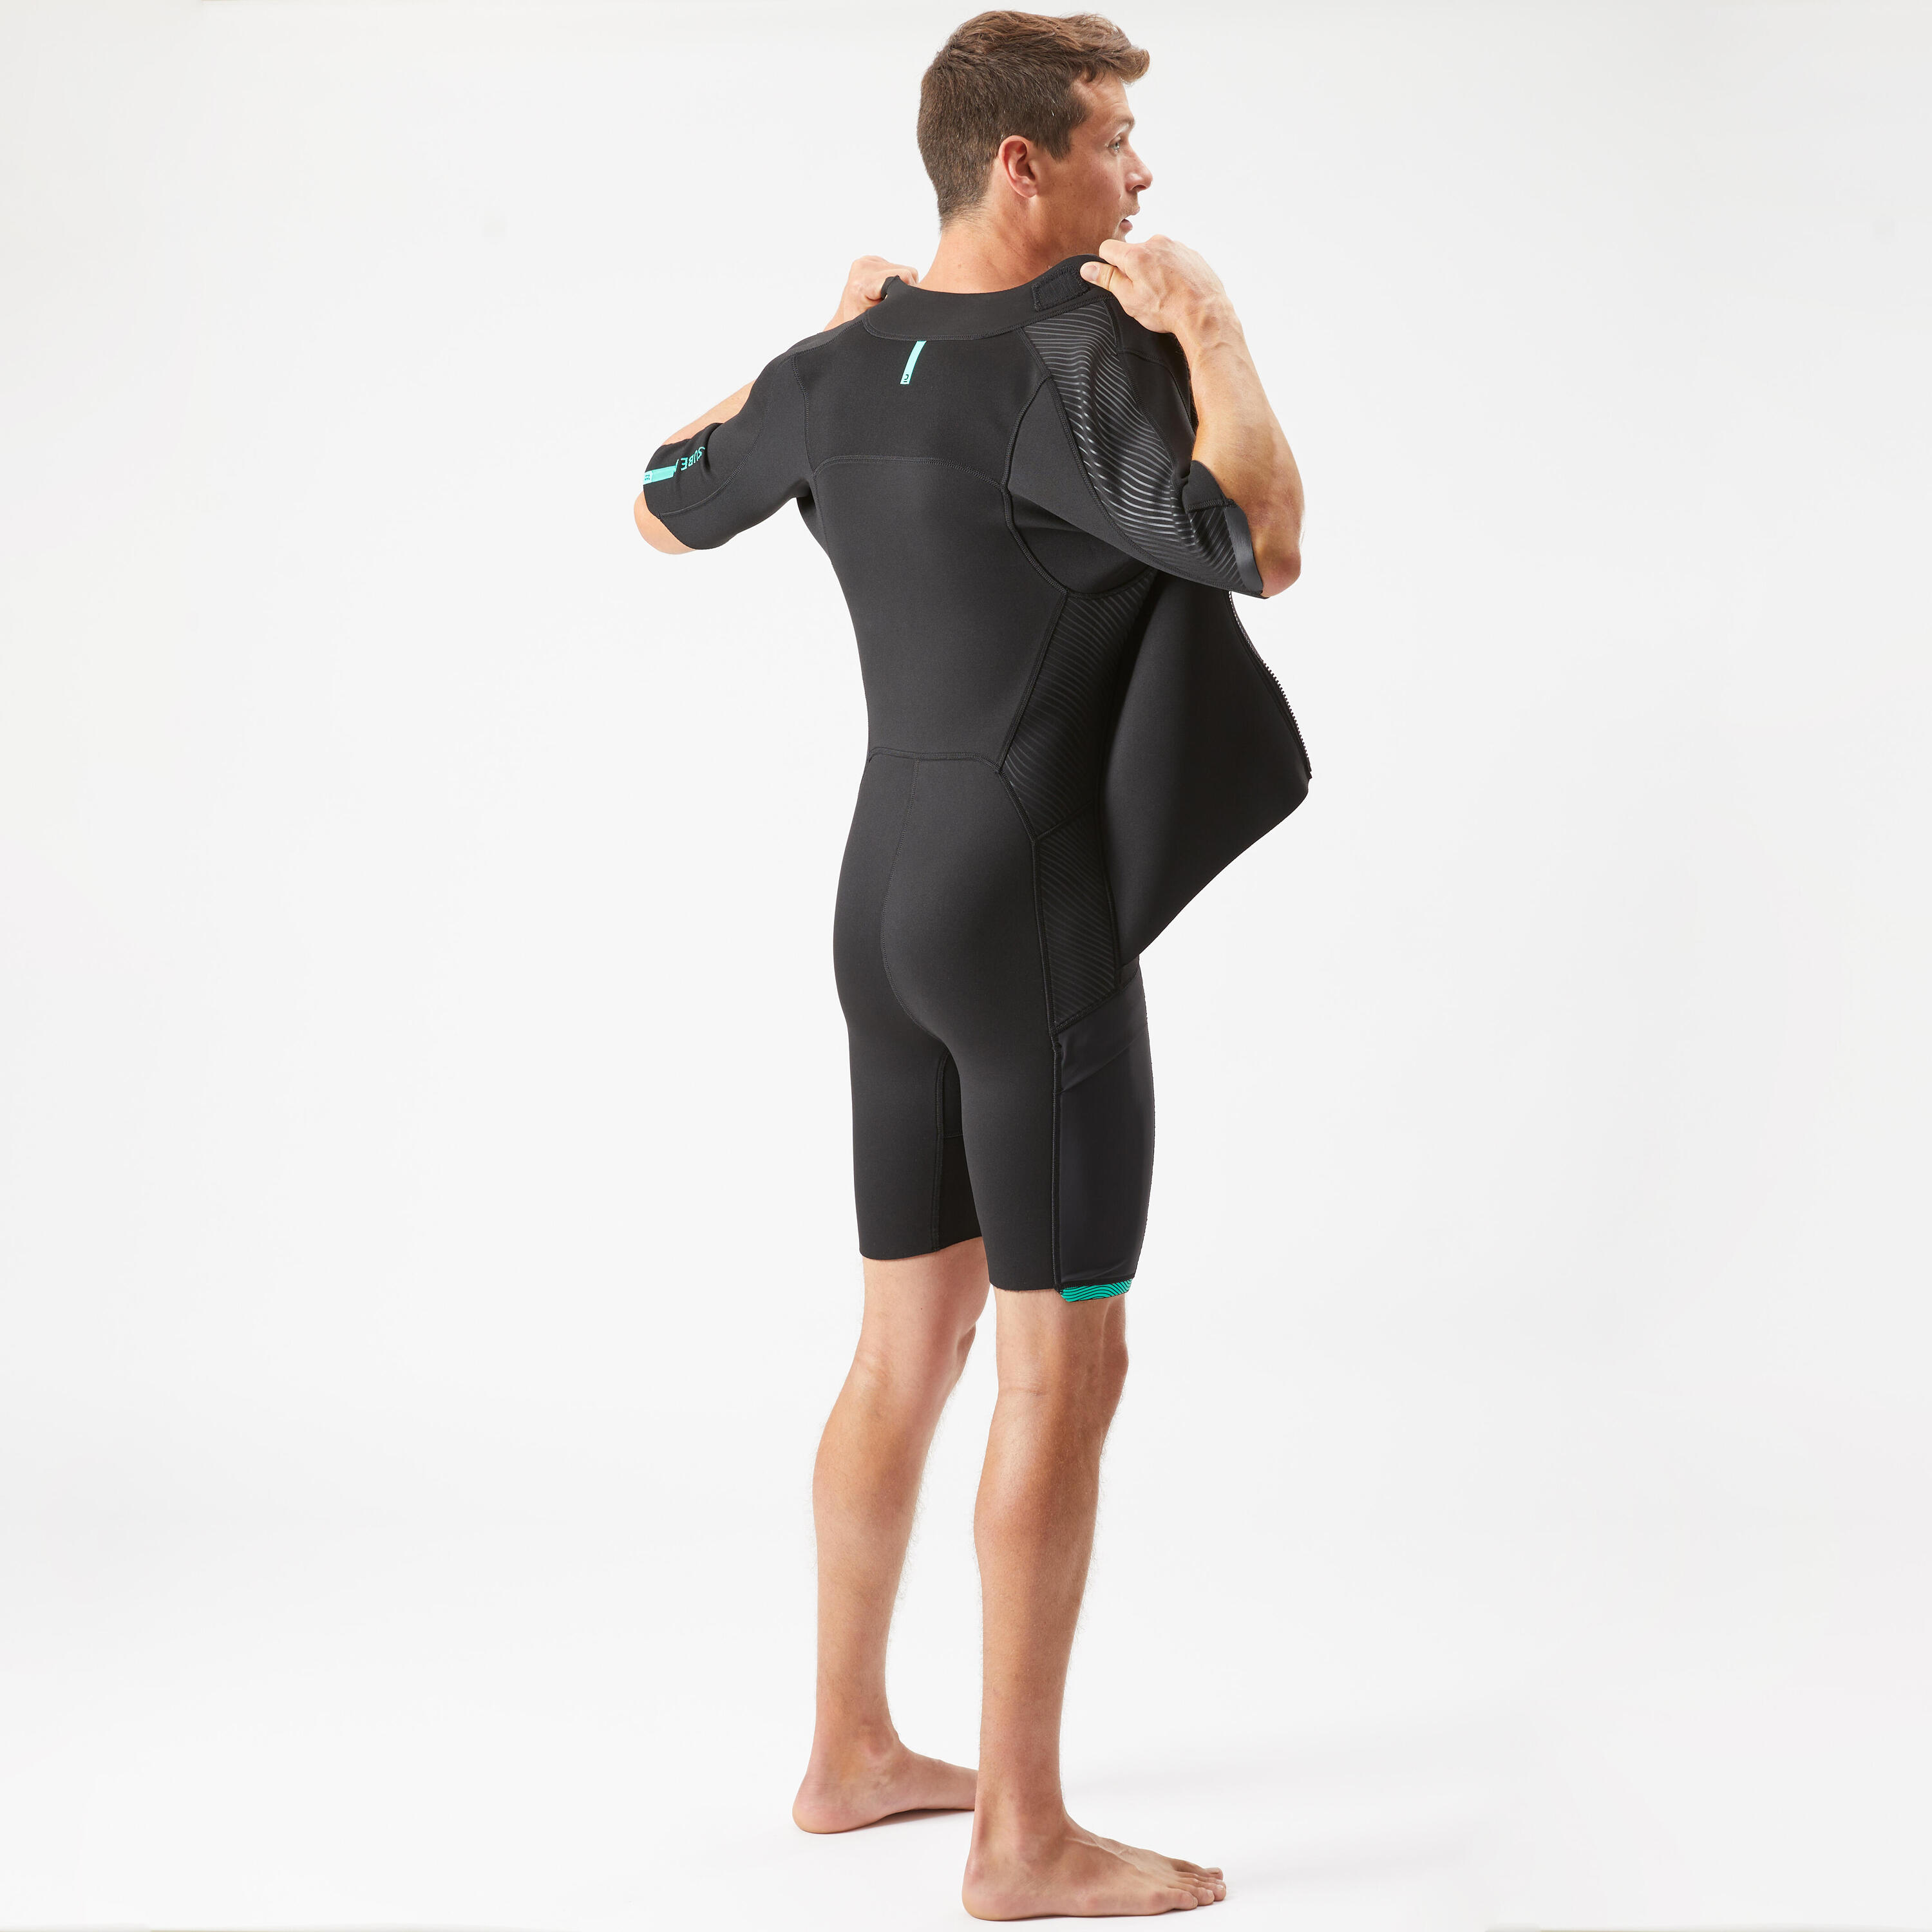 Men's 2 mm neoprene shorty wetsuit with diagonal front zip Easy 7/14